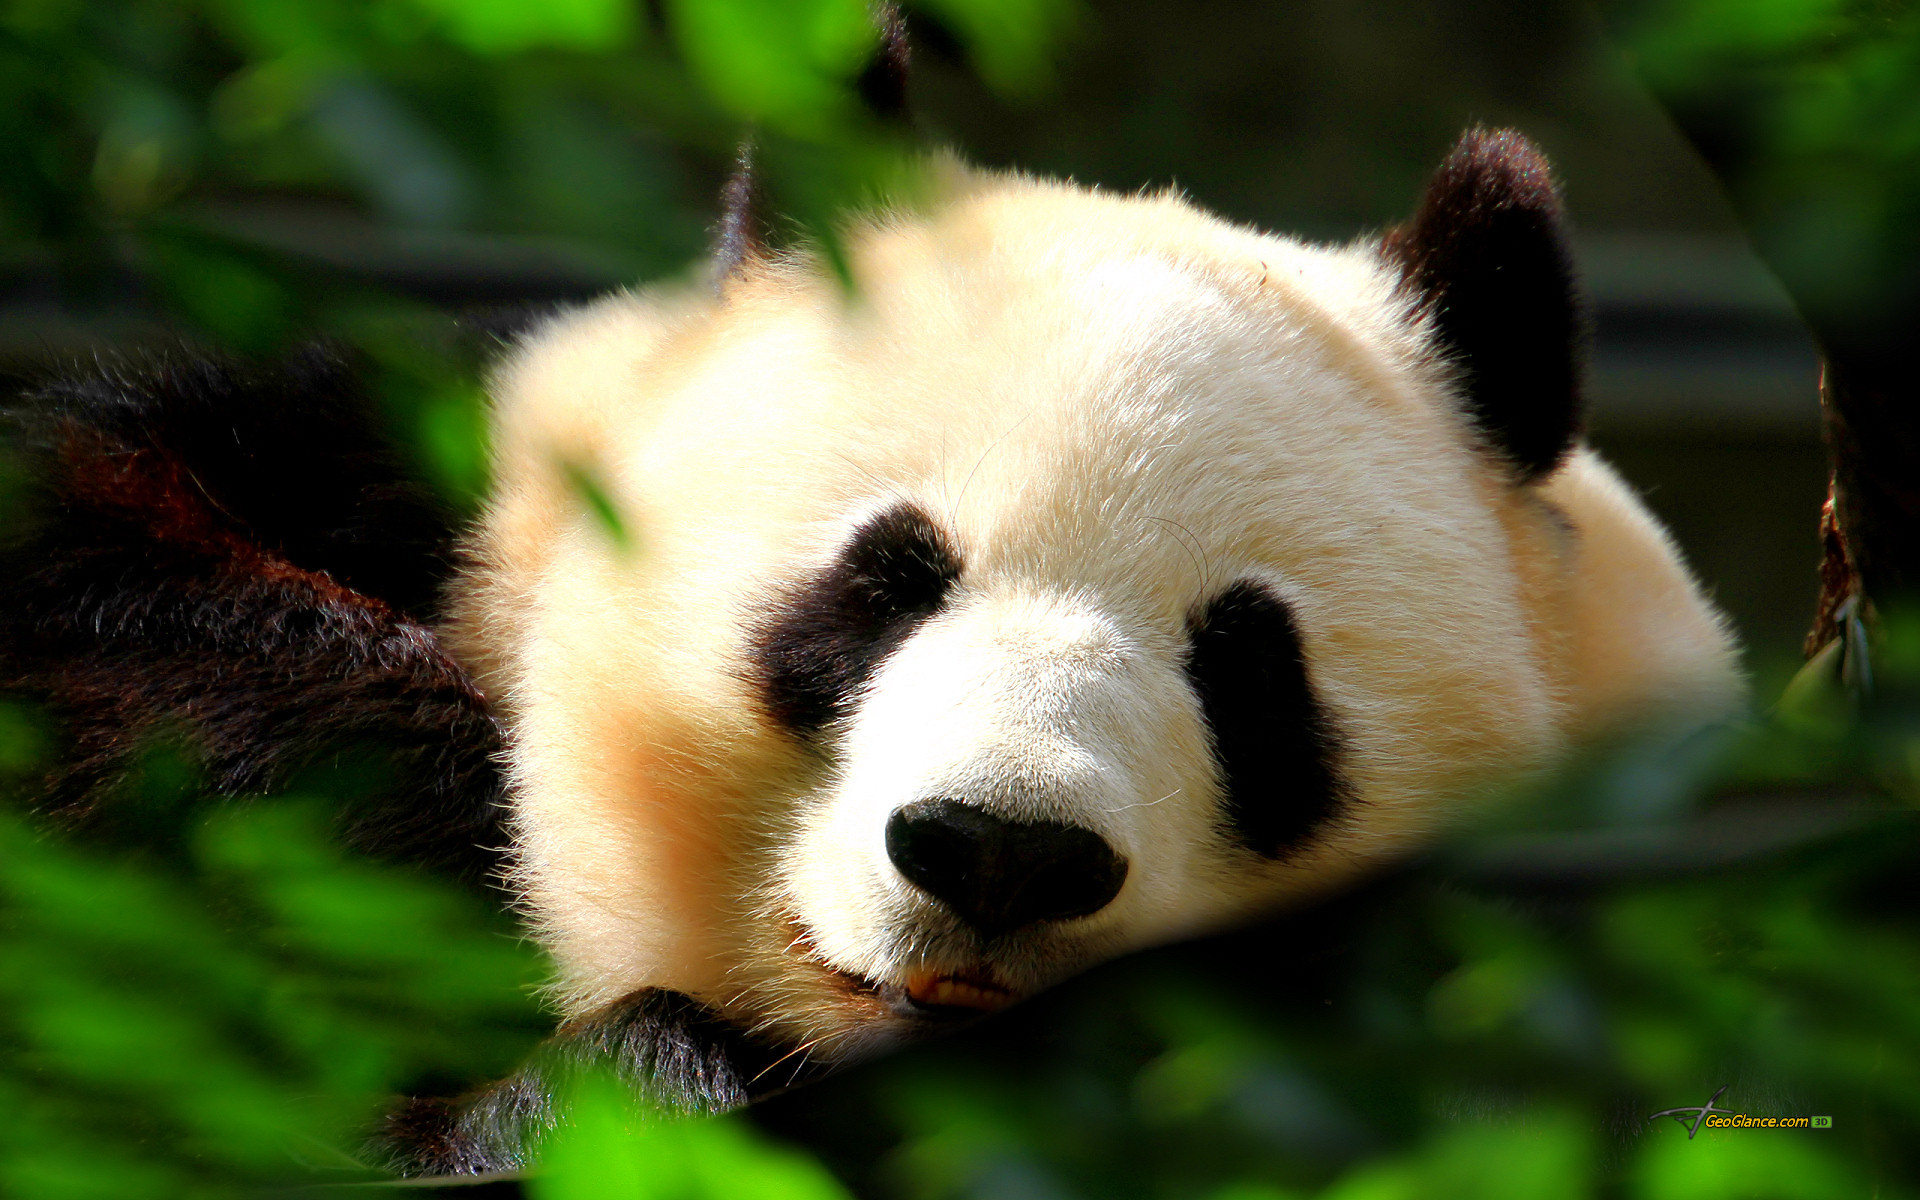 Description: Cute Panda Wallpaper is a hi res Wallpaper for pc .